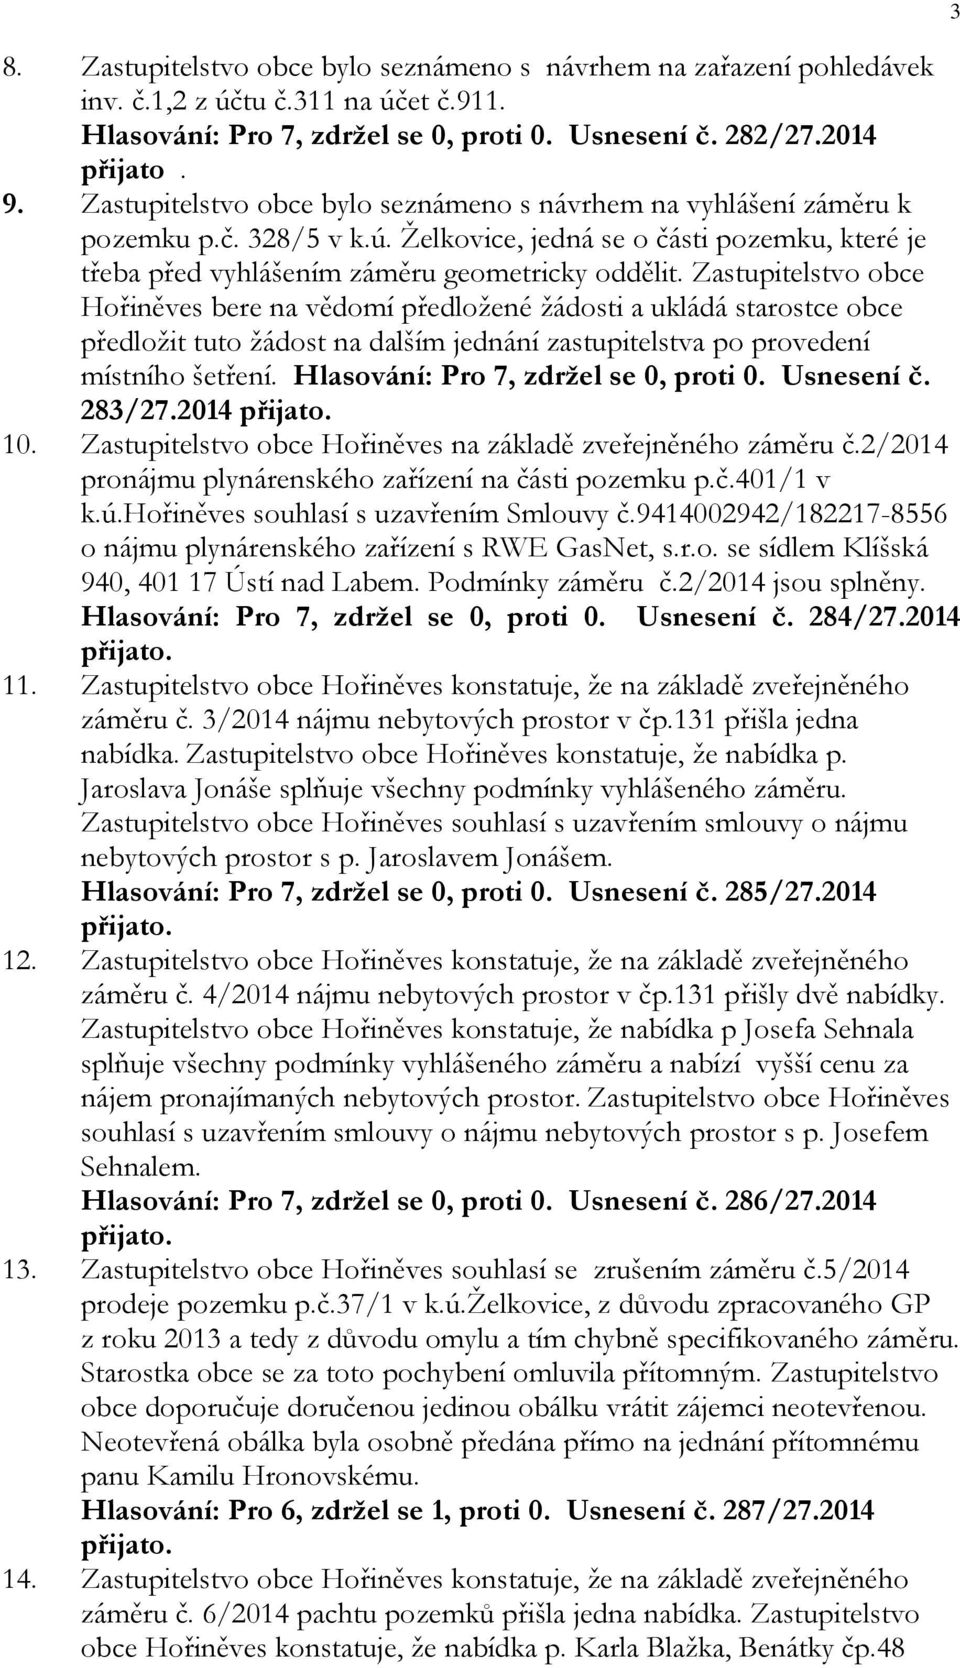 Zastupitelstvo obce Hořiněves bere na vědomí předložené žádosti a ukládá starostce obce předložit tuto žádost na dalším jednání zastupitelstva po provedení místního šetření.